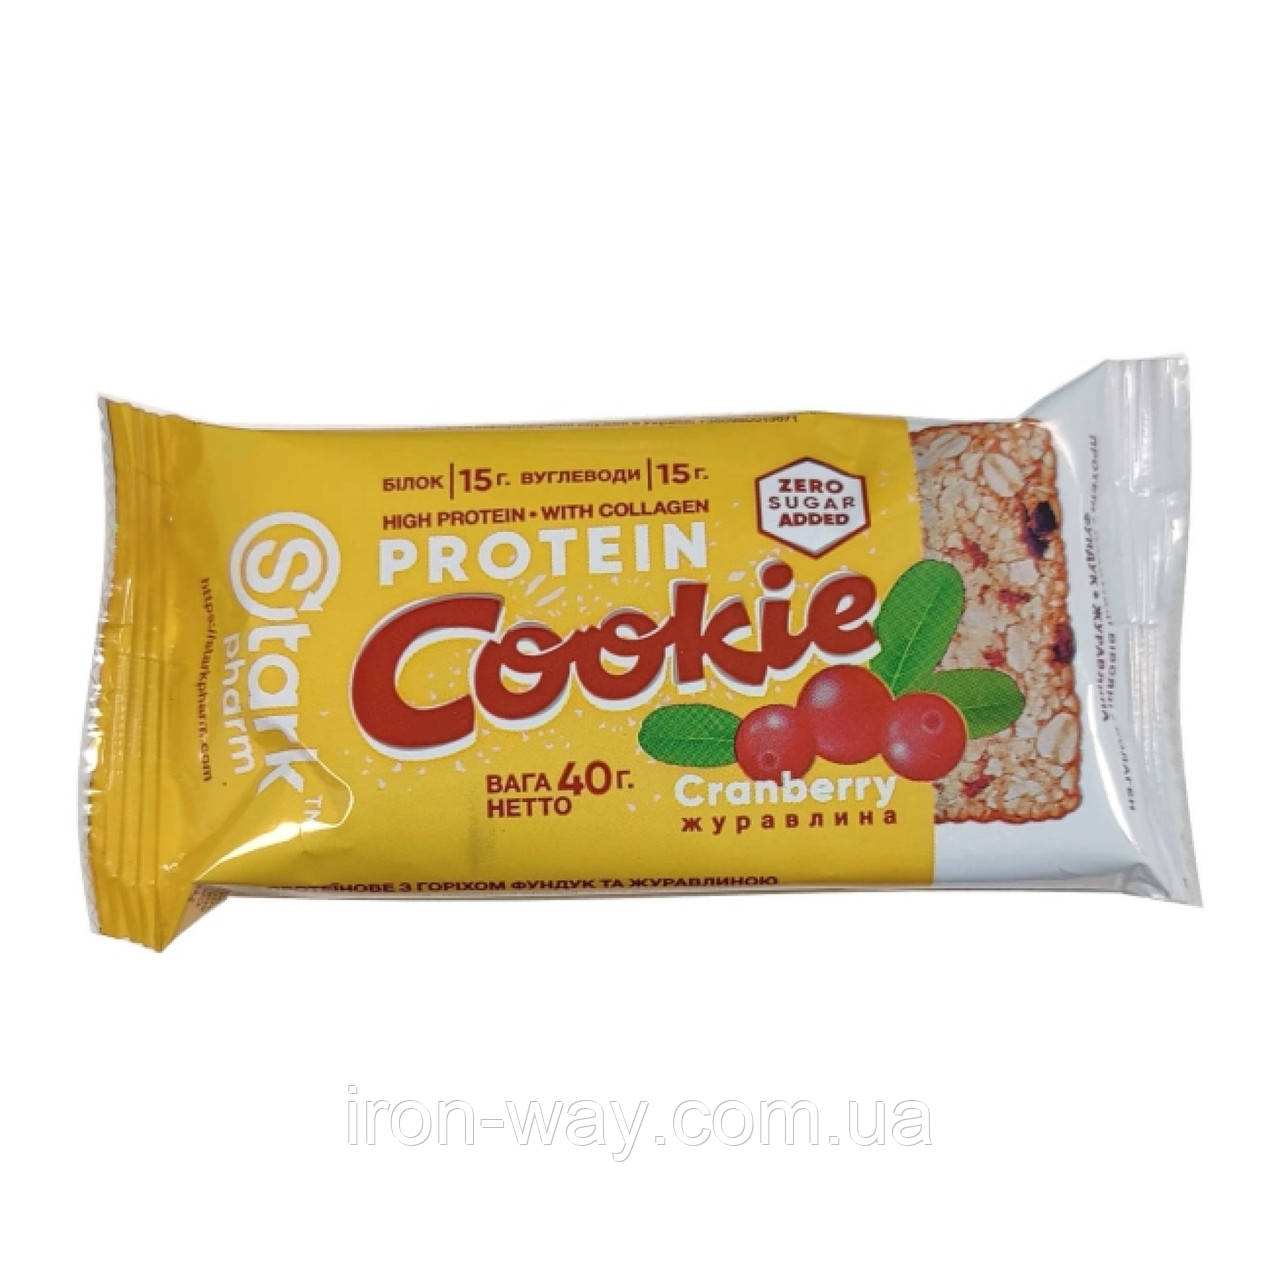 Protein Cookie - 40g Hazelnut Cranberry